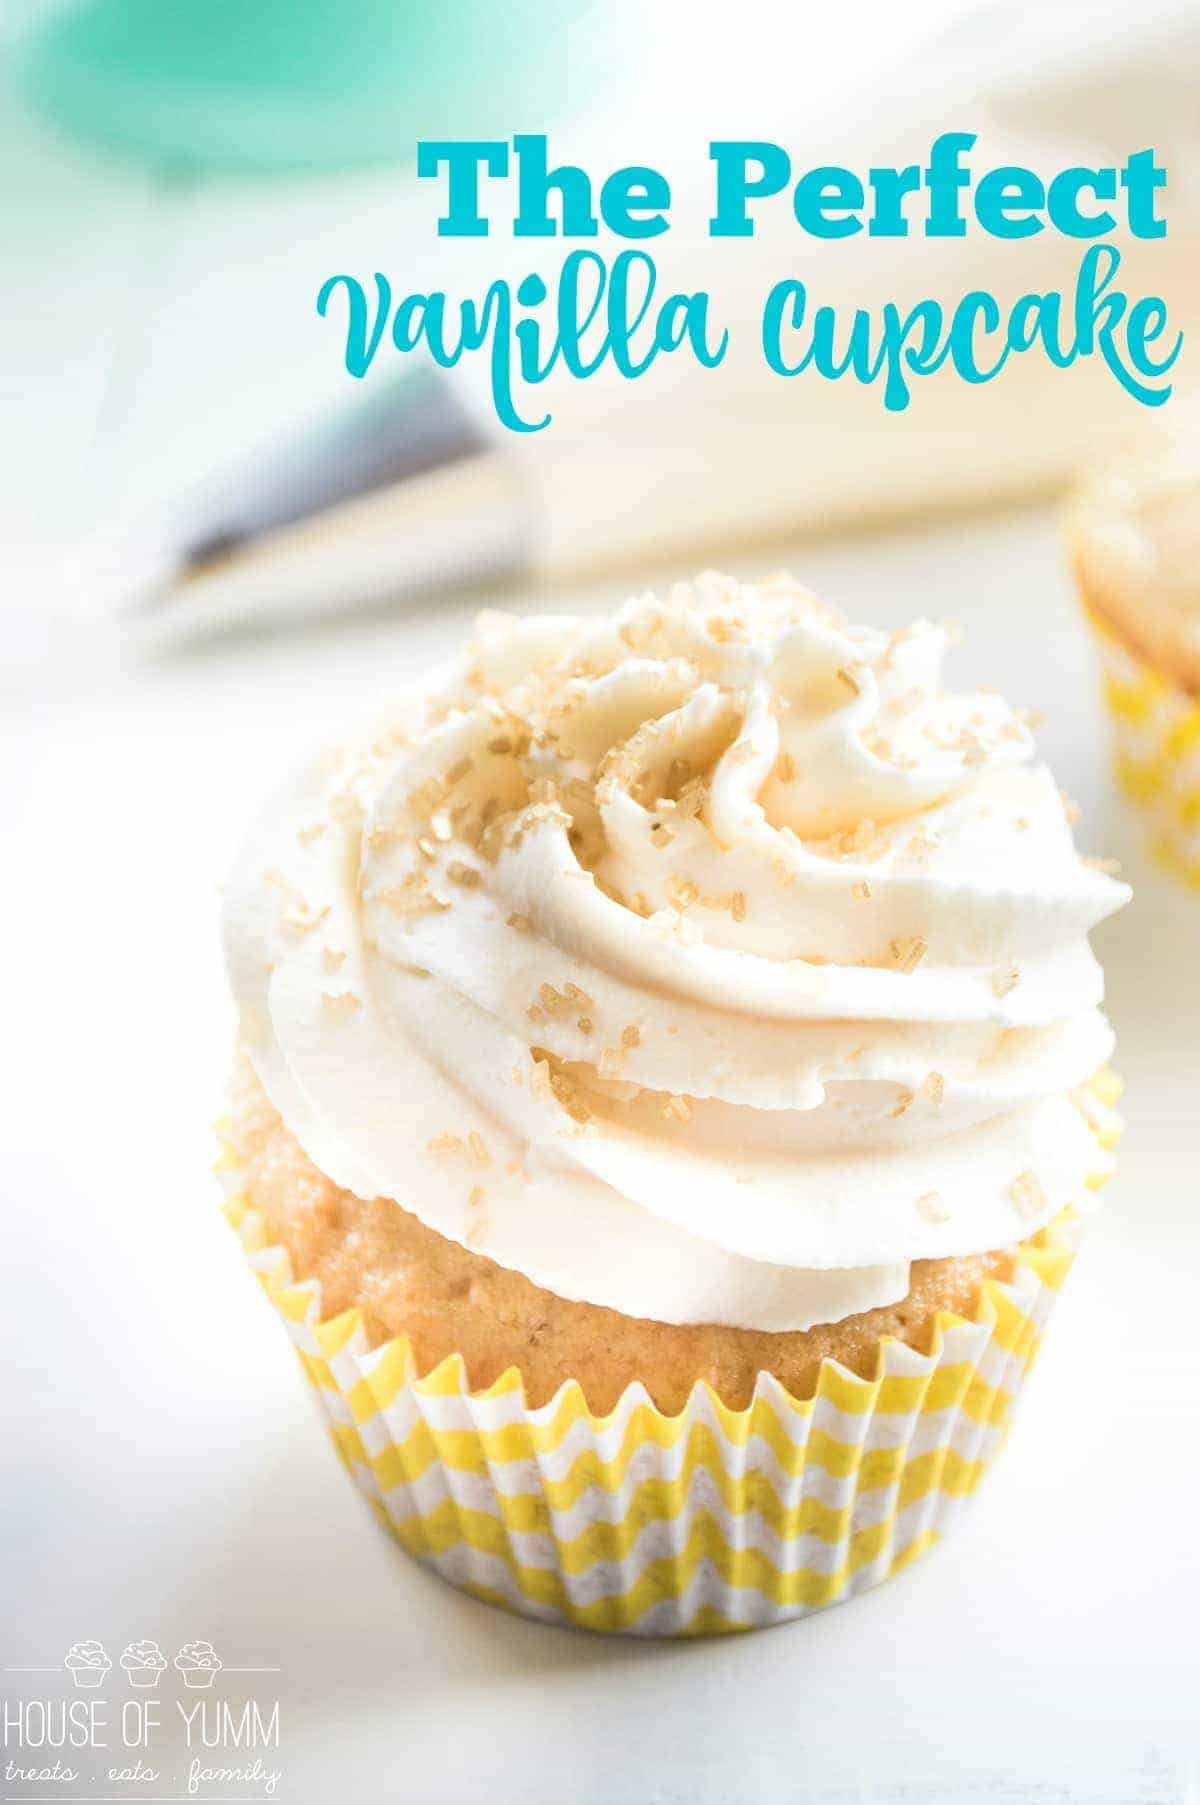 Le parfait cupcake à la vanille. Une recette facile à réaliser à partir de zéro ! Léger, moelleux et plein d'arôme de vanille ! Plus des tonnes de conseils et d'astuces sur la façon de faire un cupcake parfait qui fonctionnera avec n'importe quelle recette !